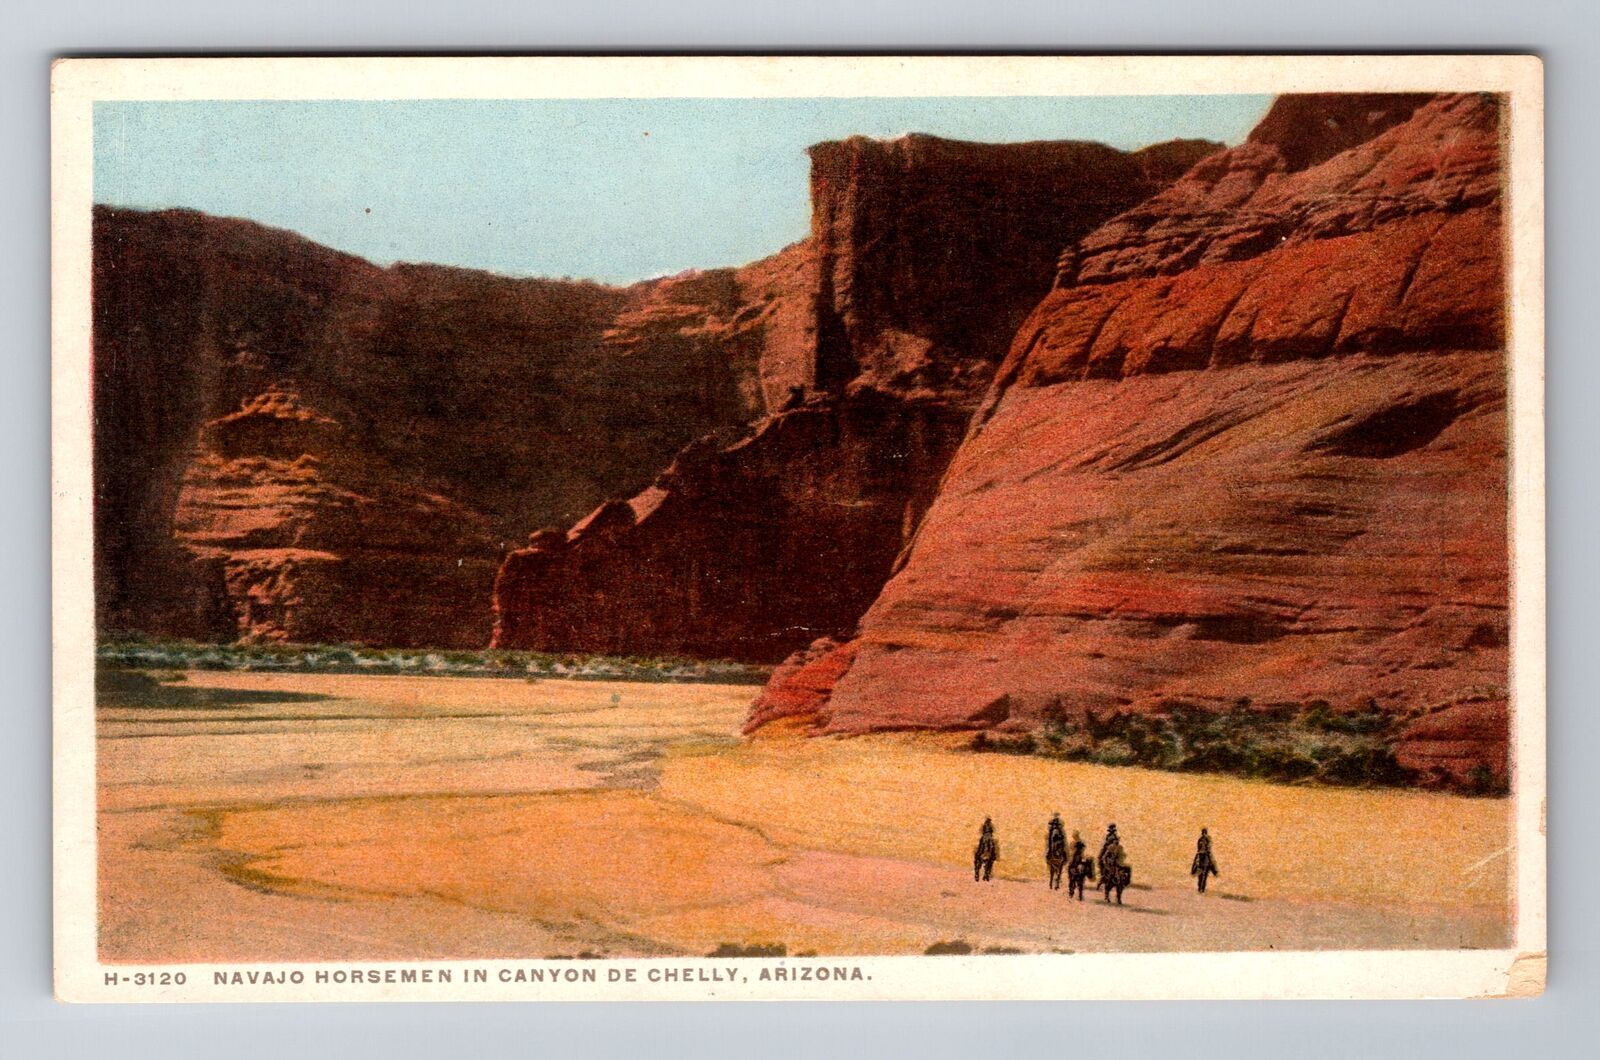 Canyon De Chelly AR-Arizona, Navajo Horsemen in Canyon, Vintage Postcard